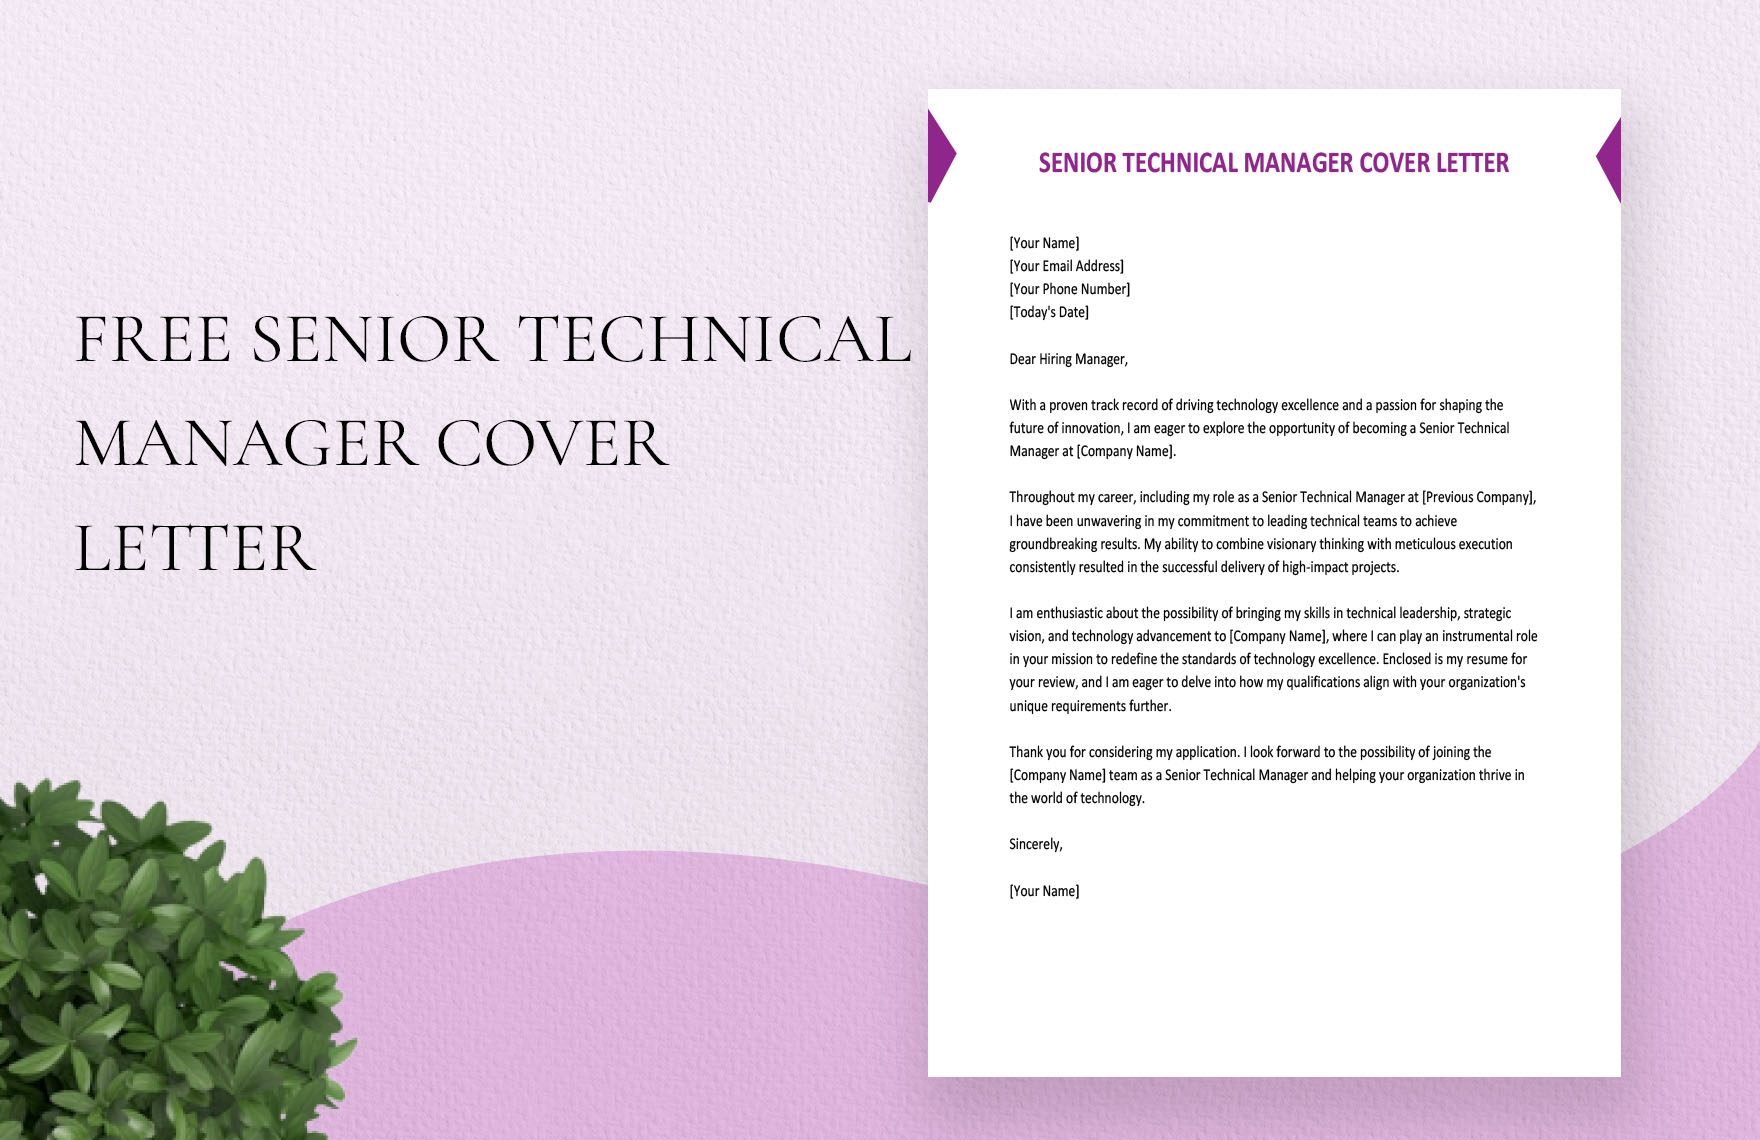 Senior Technical Manager Cover Letter